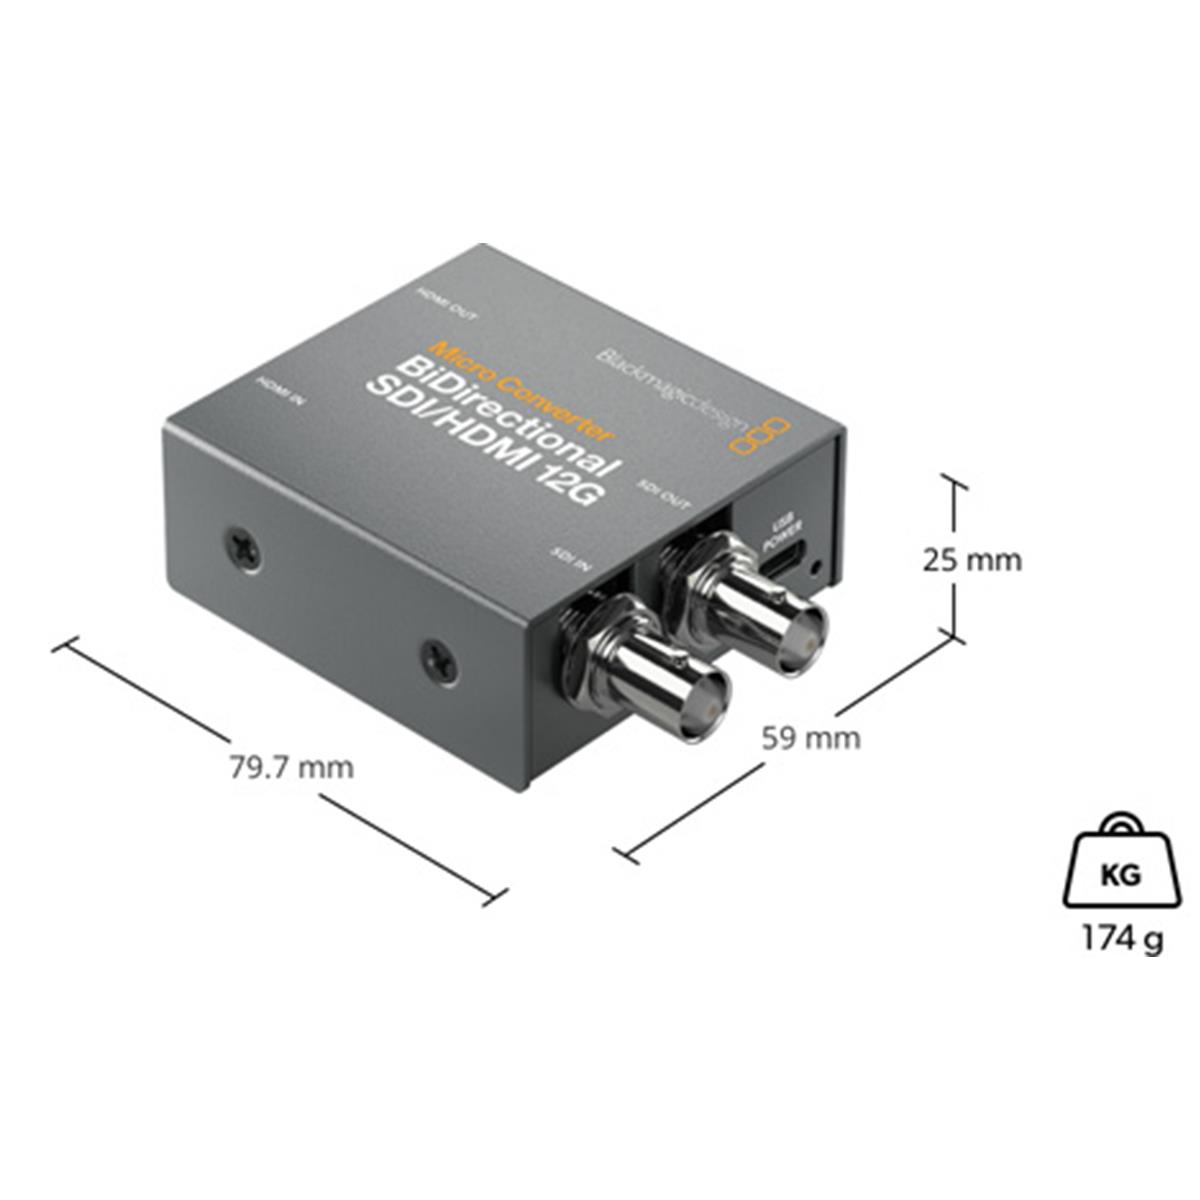 Blackmagic Design Micro Converter BiDirect SDI/HDMI 12G PSU